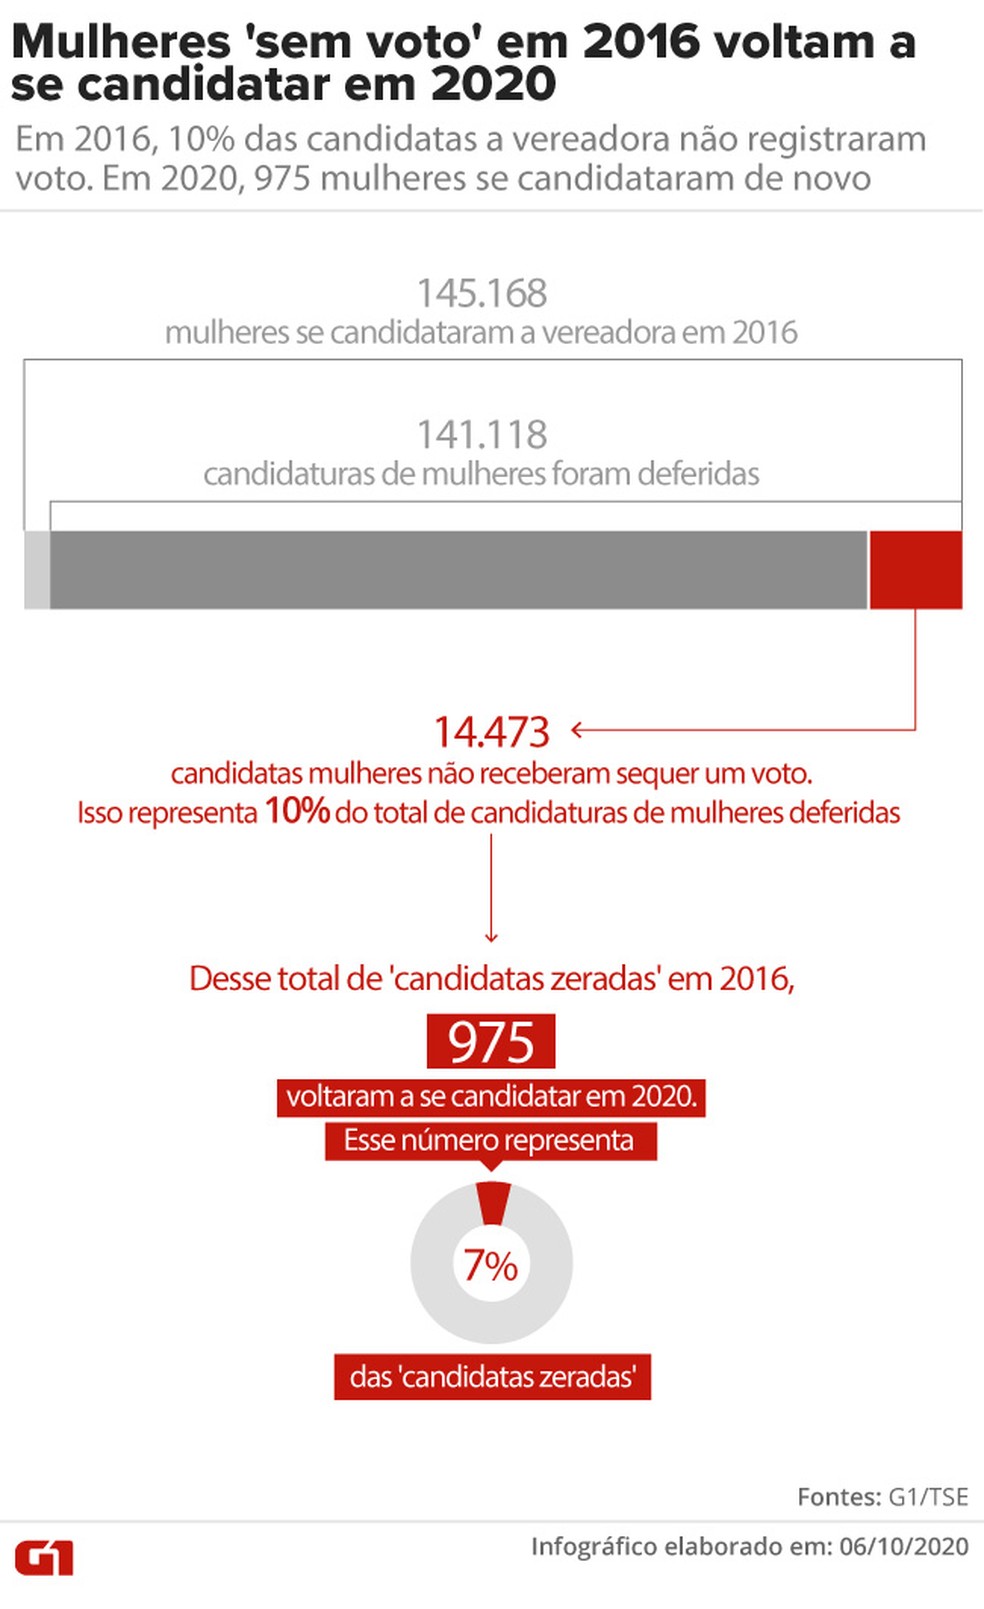 Mulheres 'sem voto' em 2016 voltam a se candidatar em 2020: em 2016, 10% das candidatas a vereadora não registraram voto. Em 2020, 975 mulheres se candidataram de novo. — Foto: Aparecido Gonçalves / G1